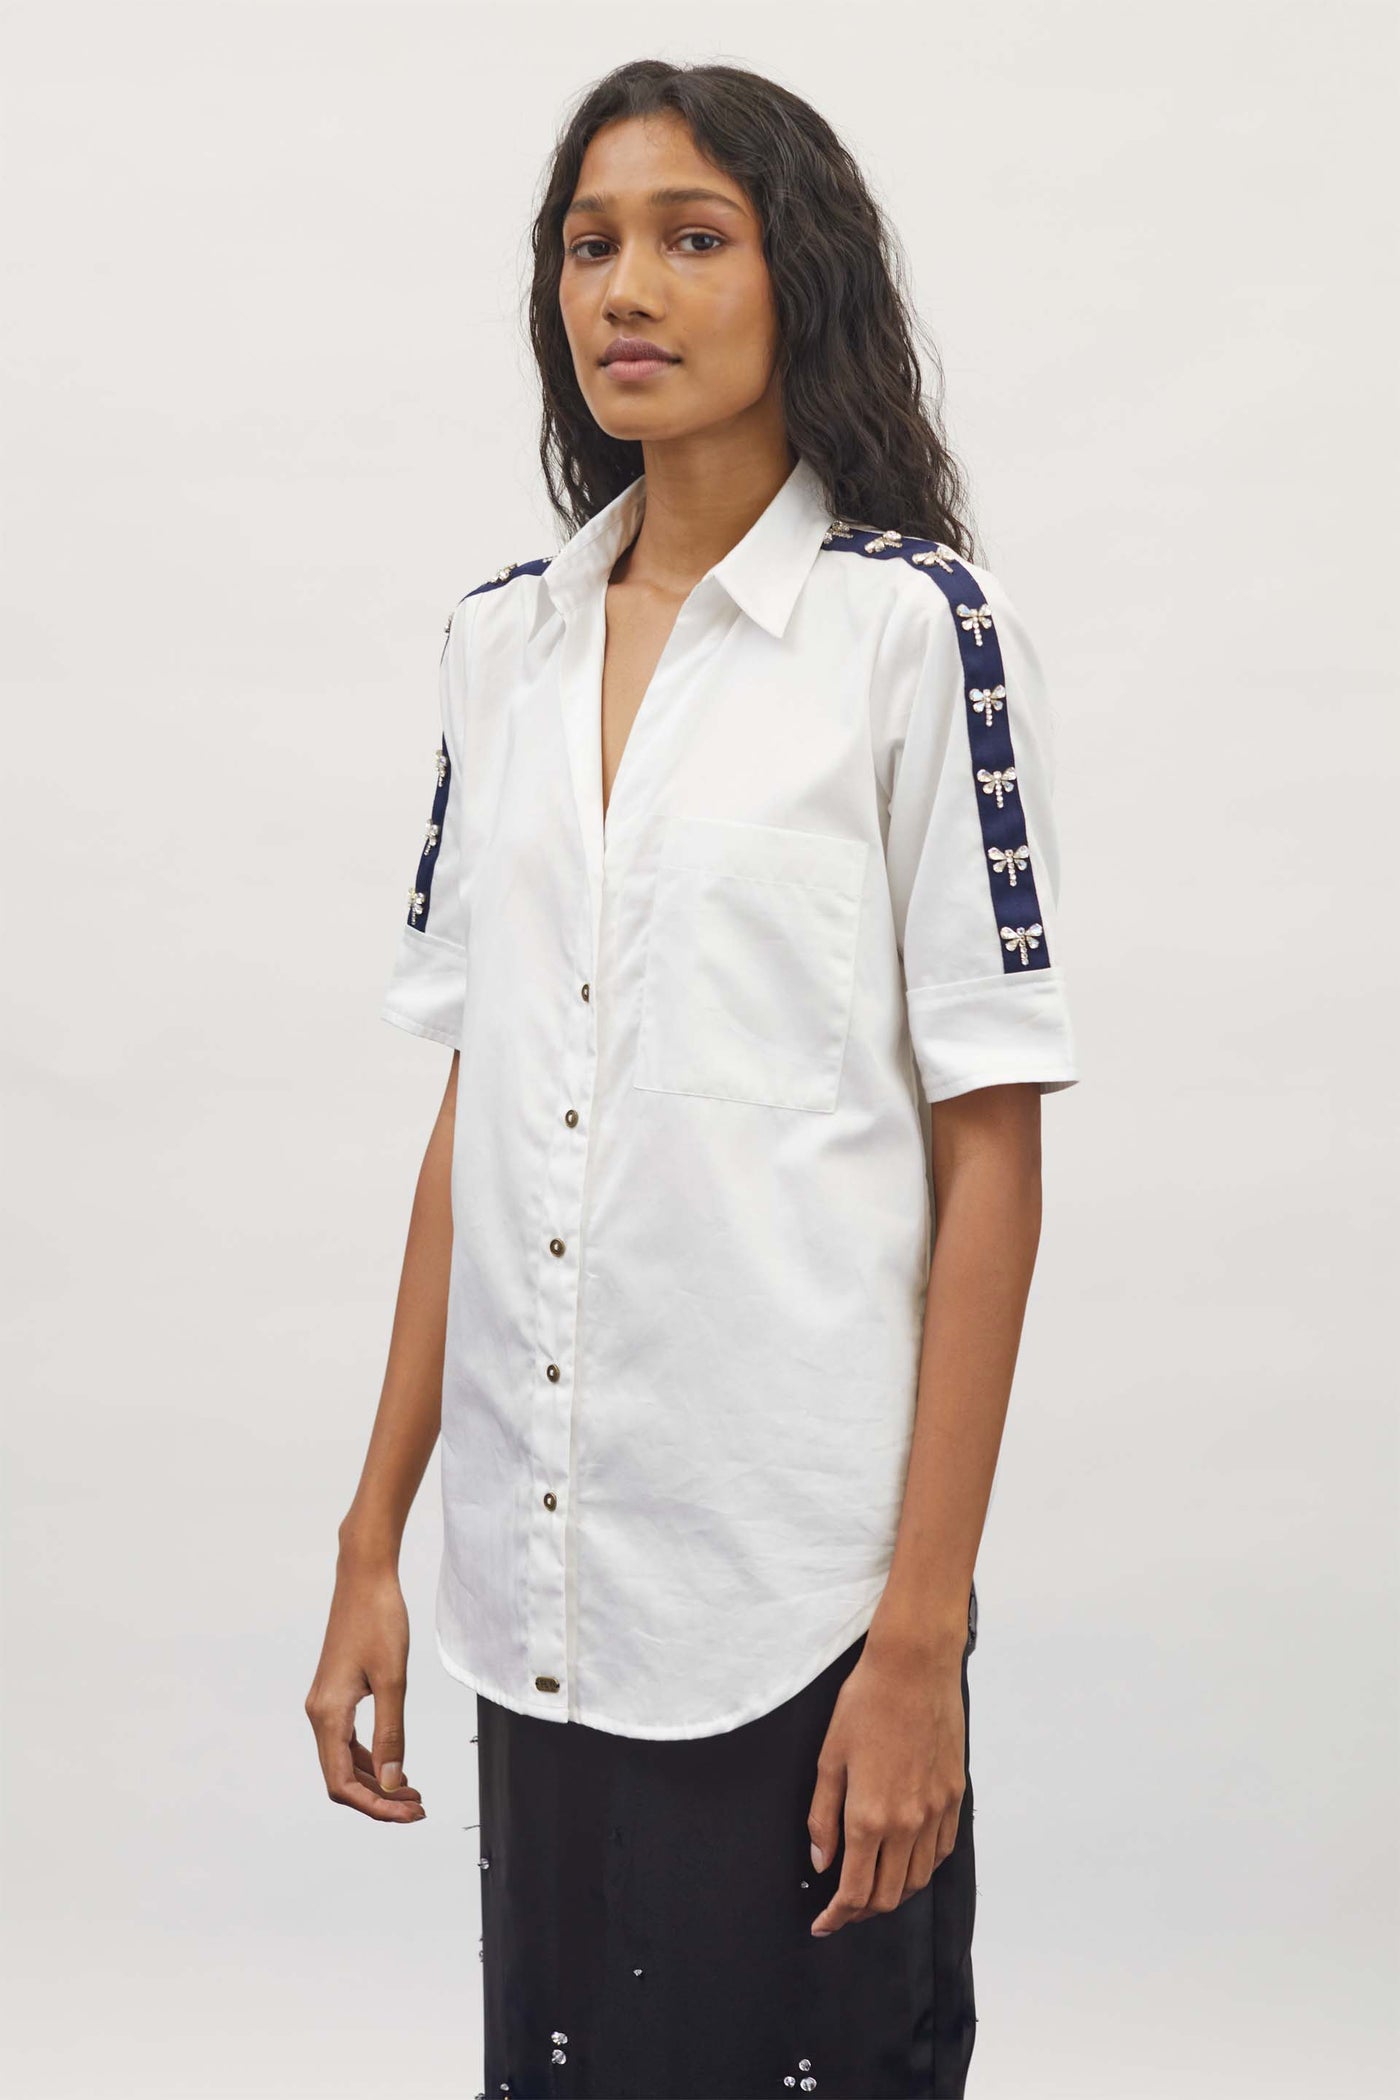 Pallavi Swadi White Dragonfly Swarovski Shirt indian designer wear womenswear online shopping melange singapore